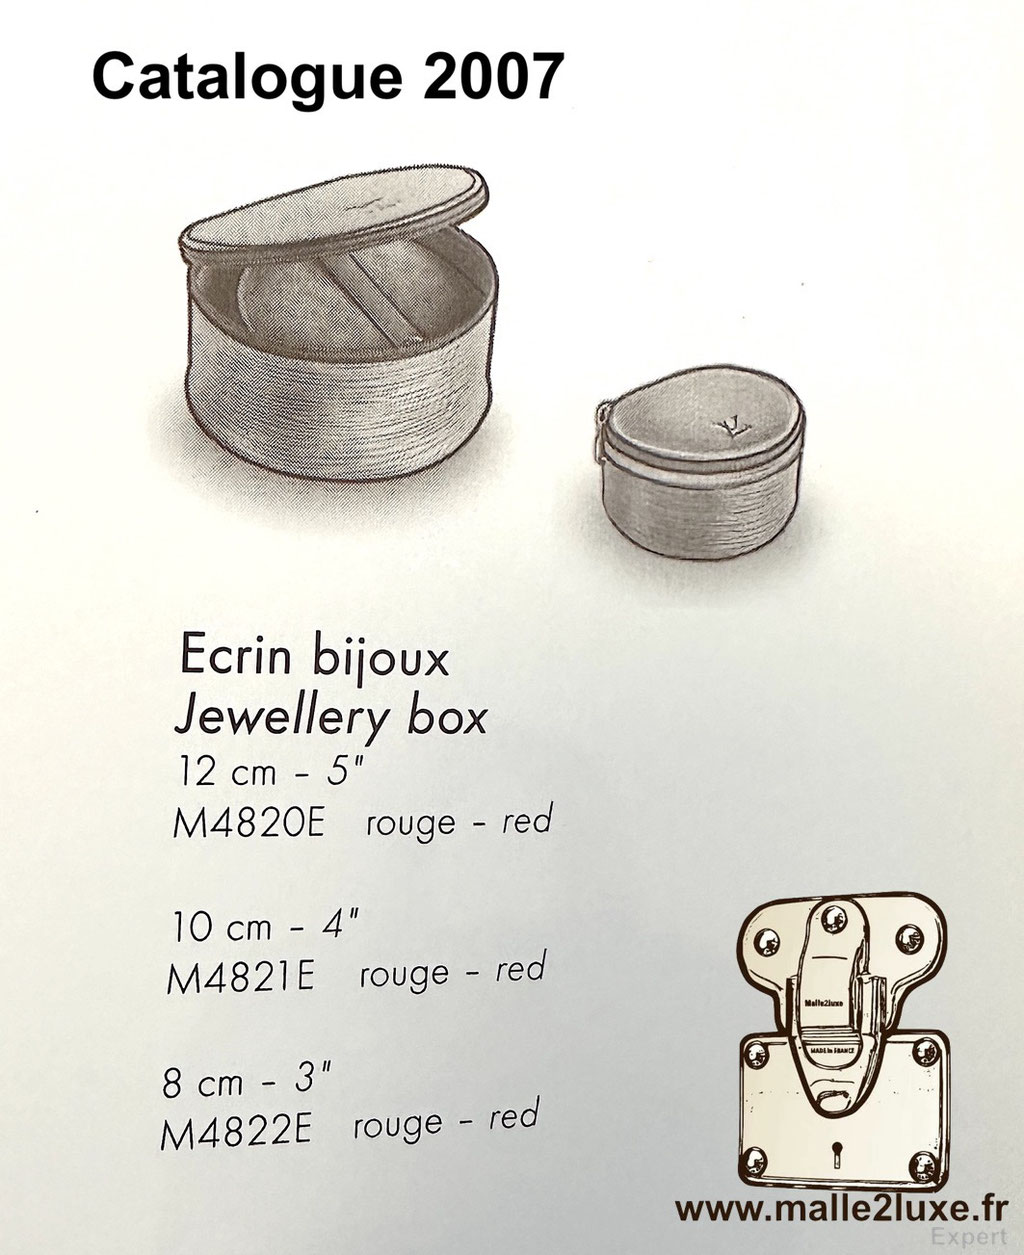 M4821E - M48217 - Ecrin à bijoux Louis Vuitton catalogue 2007